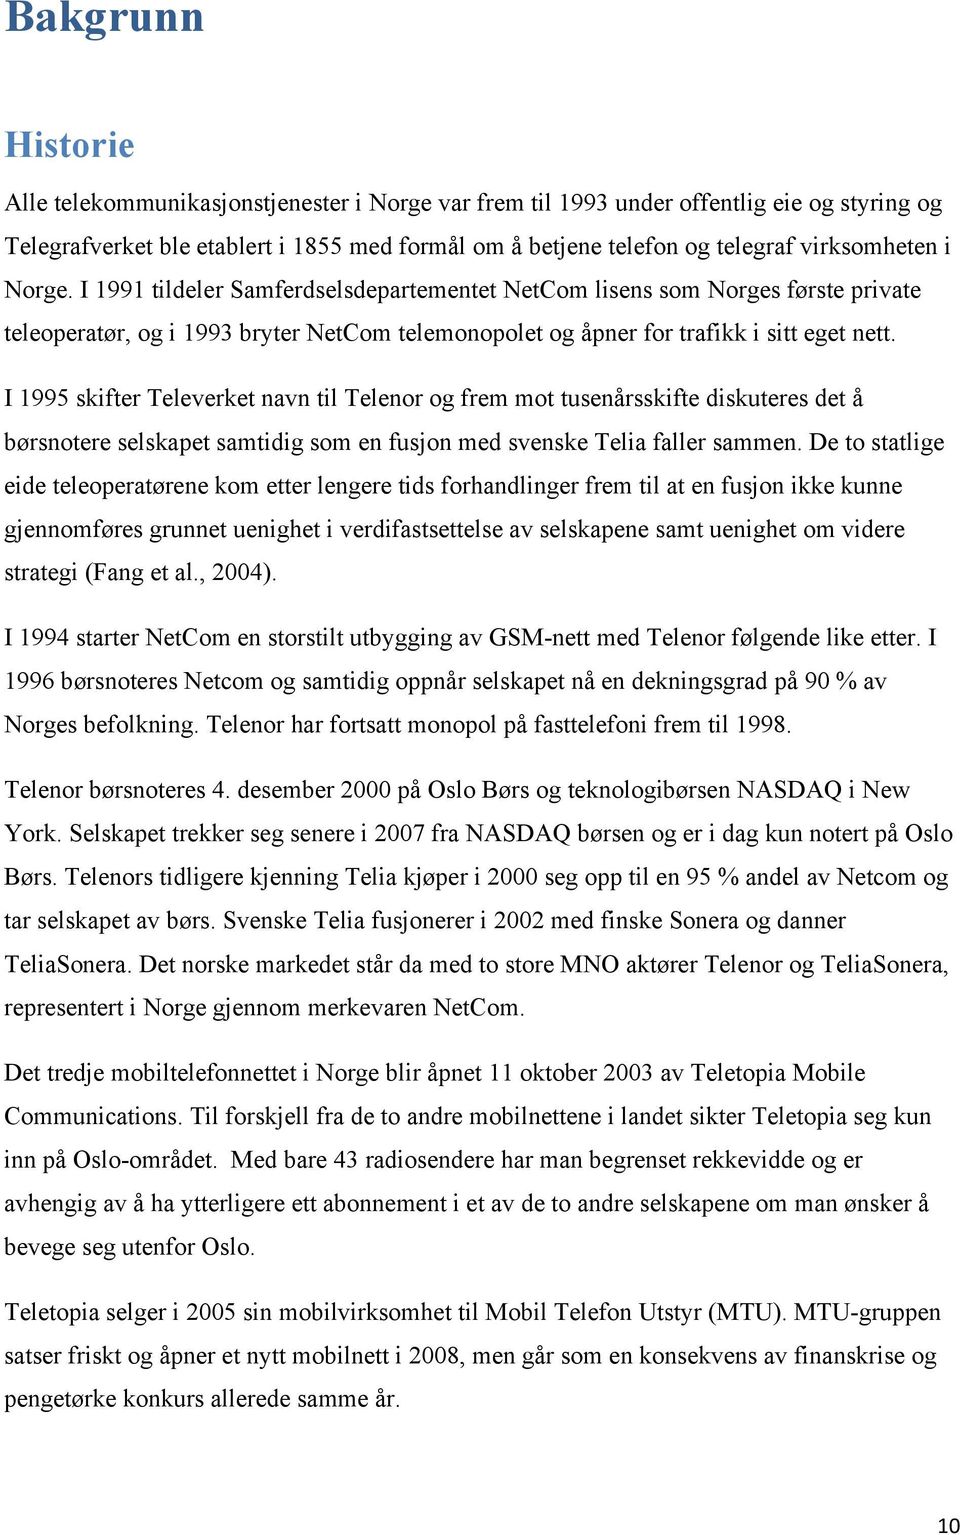 I 1995 skifter Televerket navn til Telenor og frem mot tusenårsskifte diskuteres det å børsnotere selskapet samtidig som en fusjon med svenske Telia faller sammen.